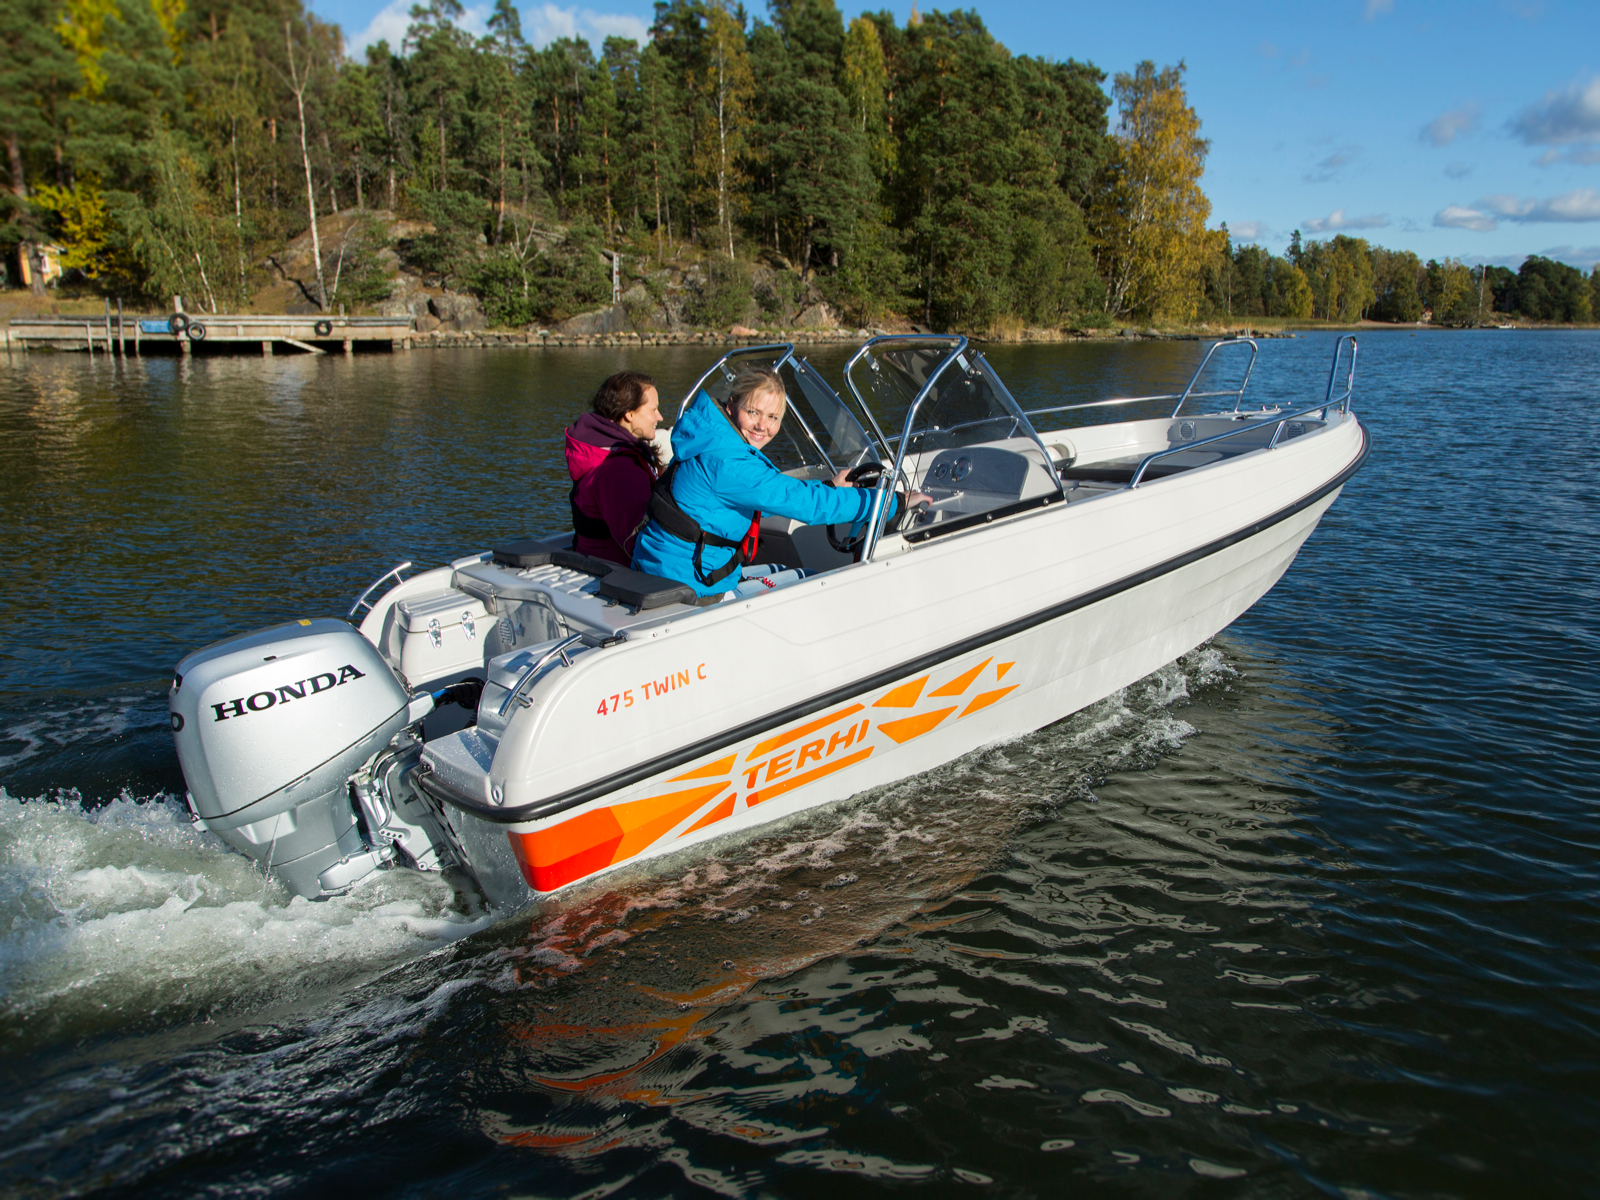 Финская моторная лодка Terhi 475 Twin C